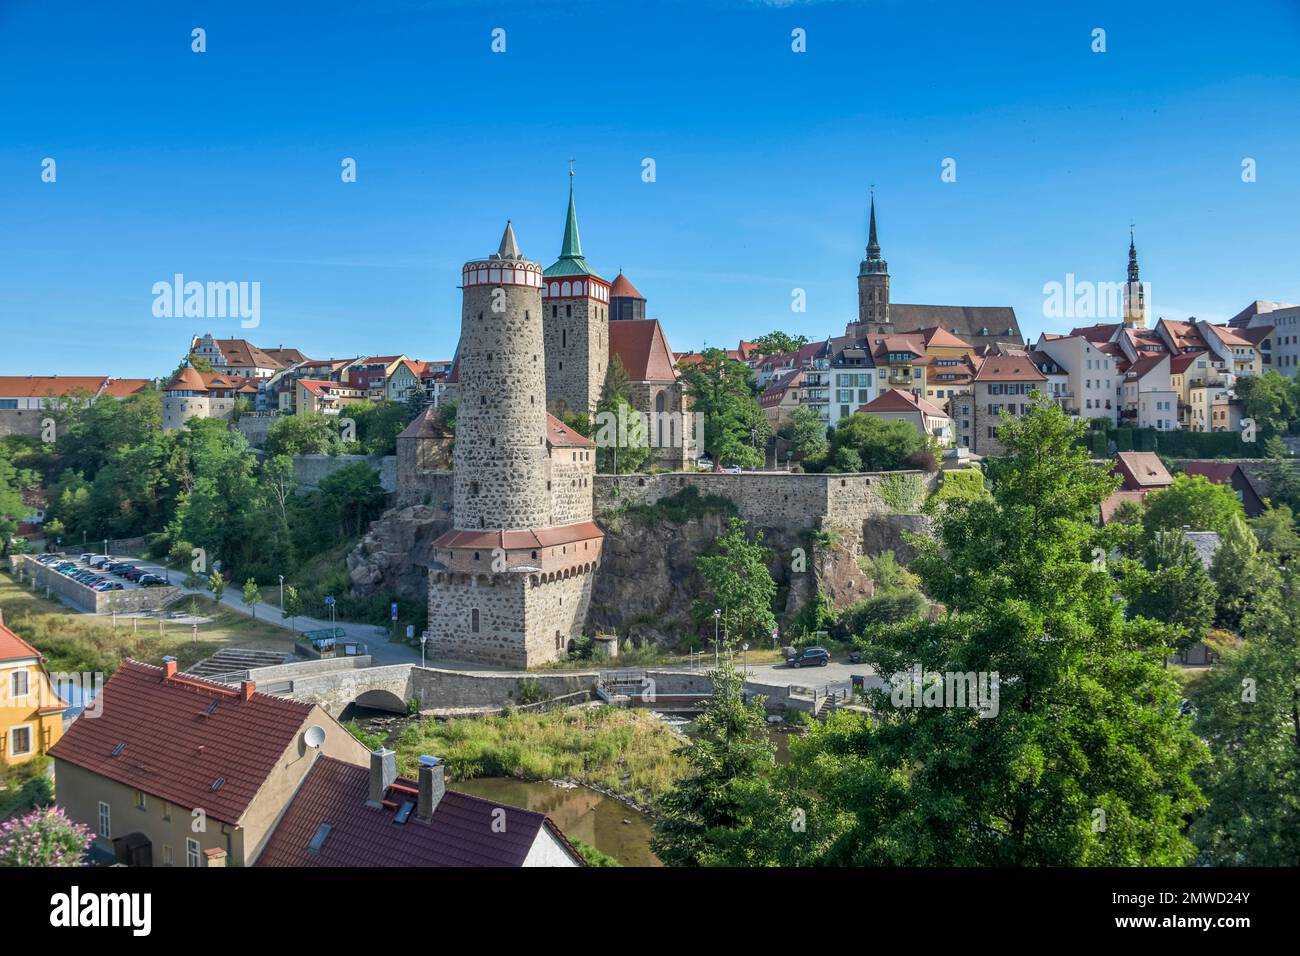 Stadtpanorama mit Turm Alte Wasserkunst, Bautzen, Sachsen, Deutschland Stockfoto